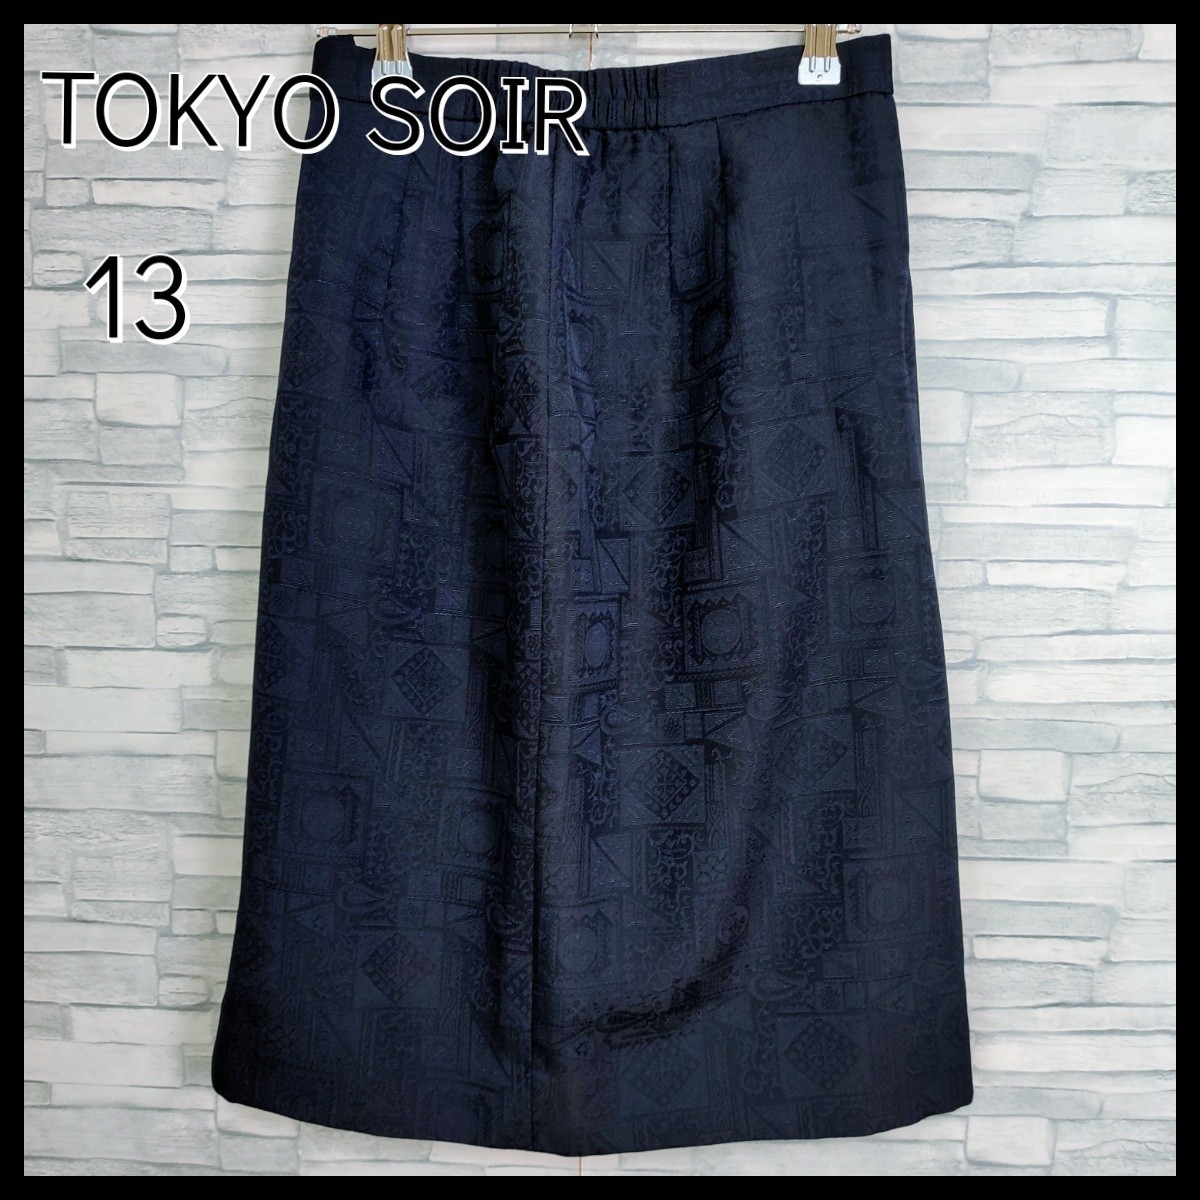 [ beautiful goods ]TOKYO SOIR Tokyo sowa-ru* shadow design knee height skirt 13 number dark navy made in Japan pcs shape Japan NAVY shadow